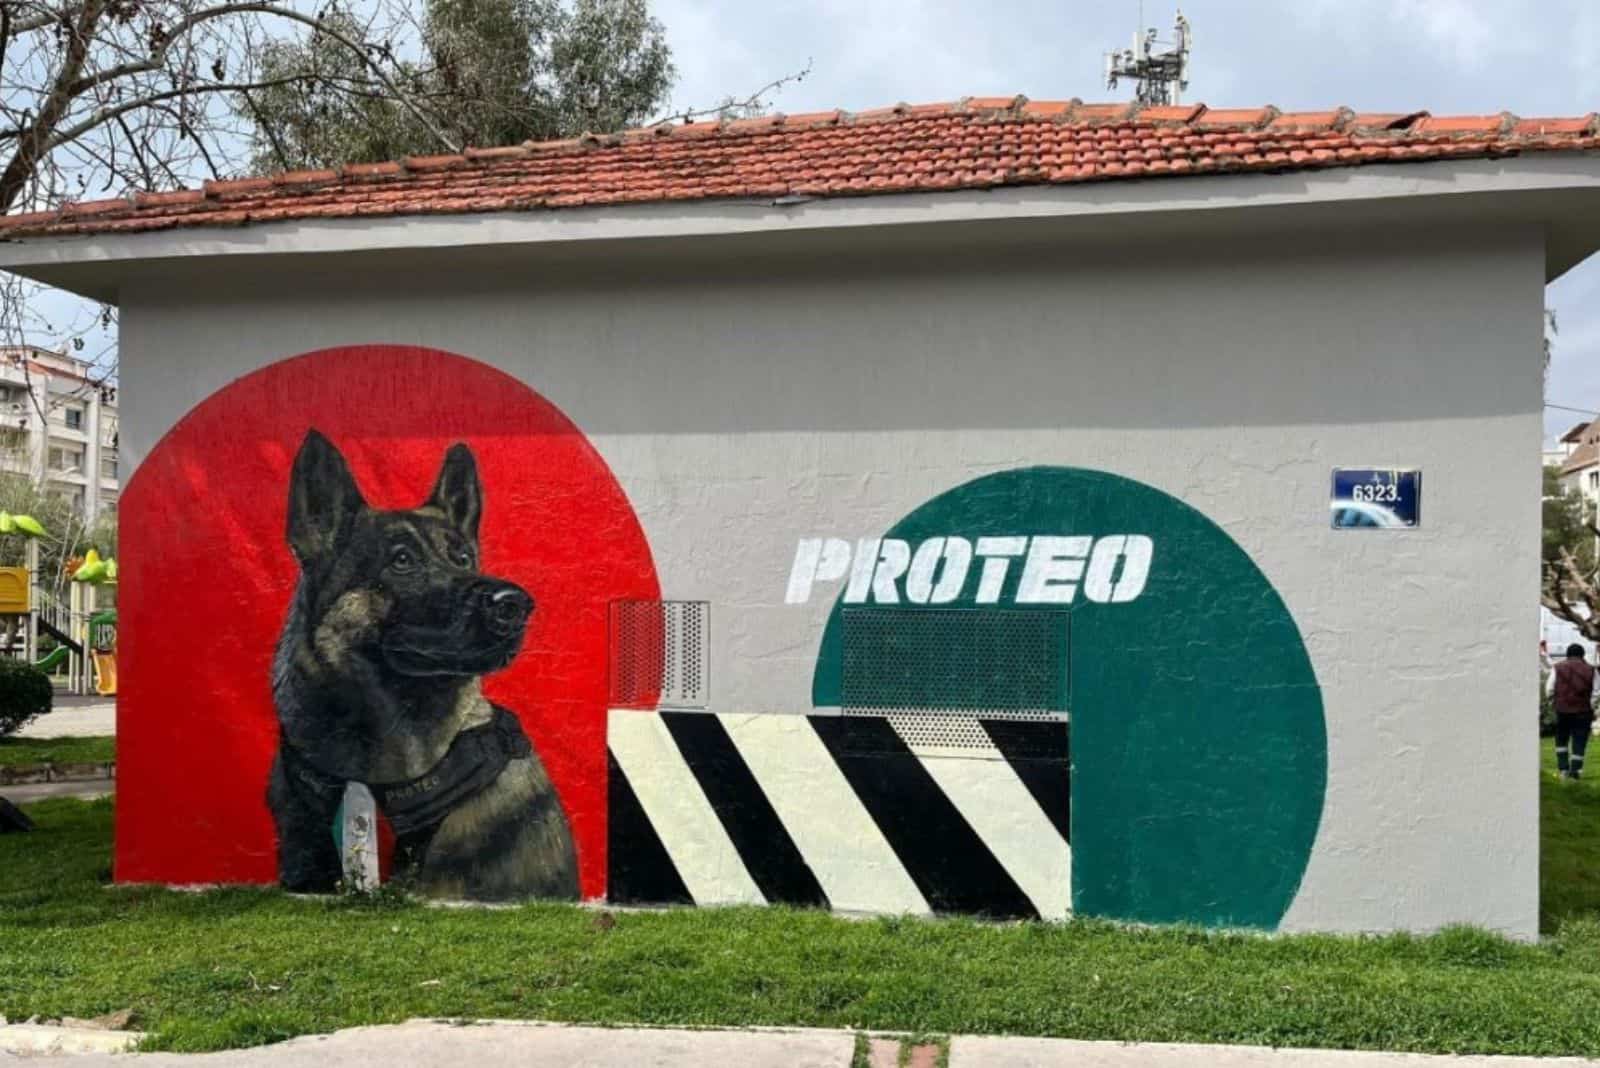 Izmir Mural Honors Proteo